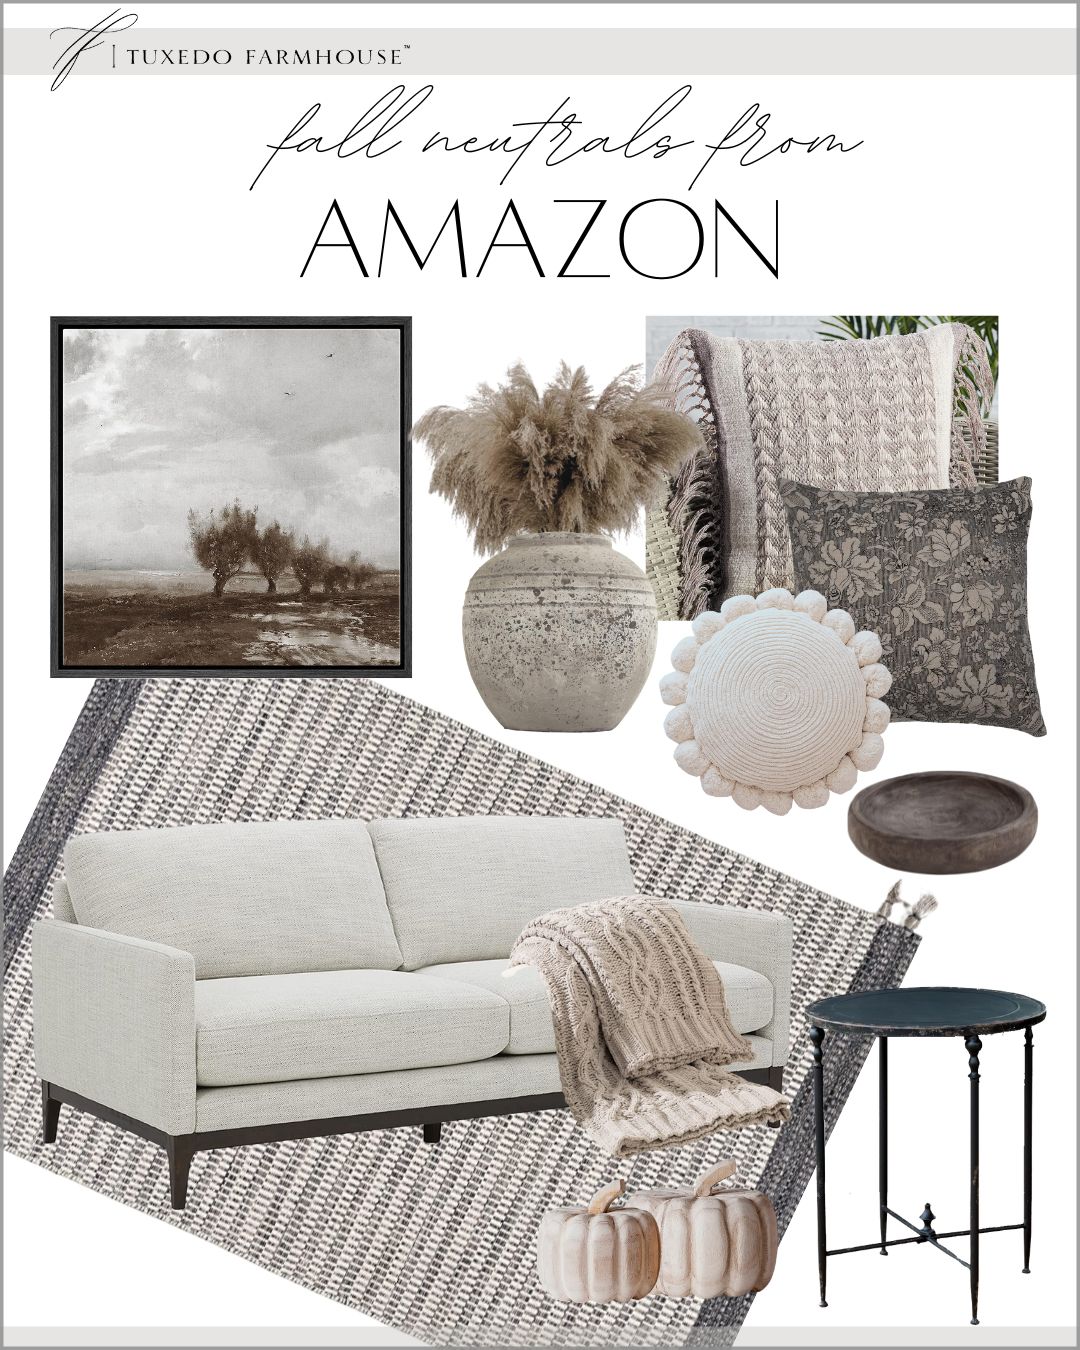 Tuxedo Farmhouse's Amazon Page | Amazon (US)